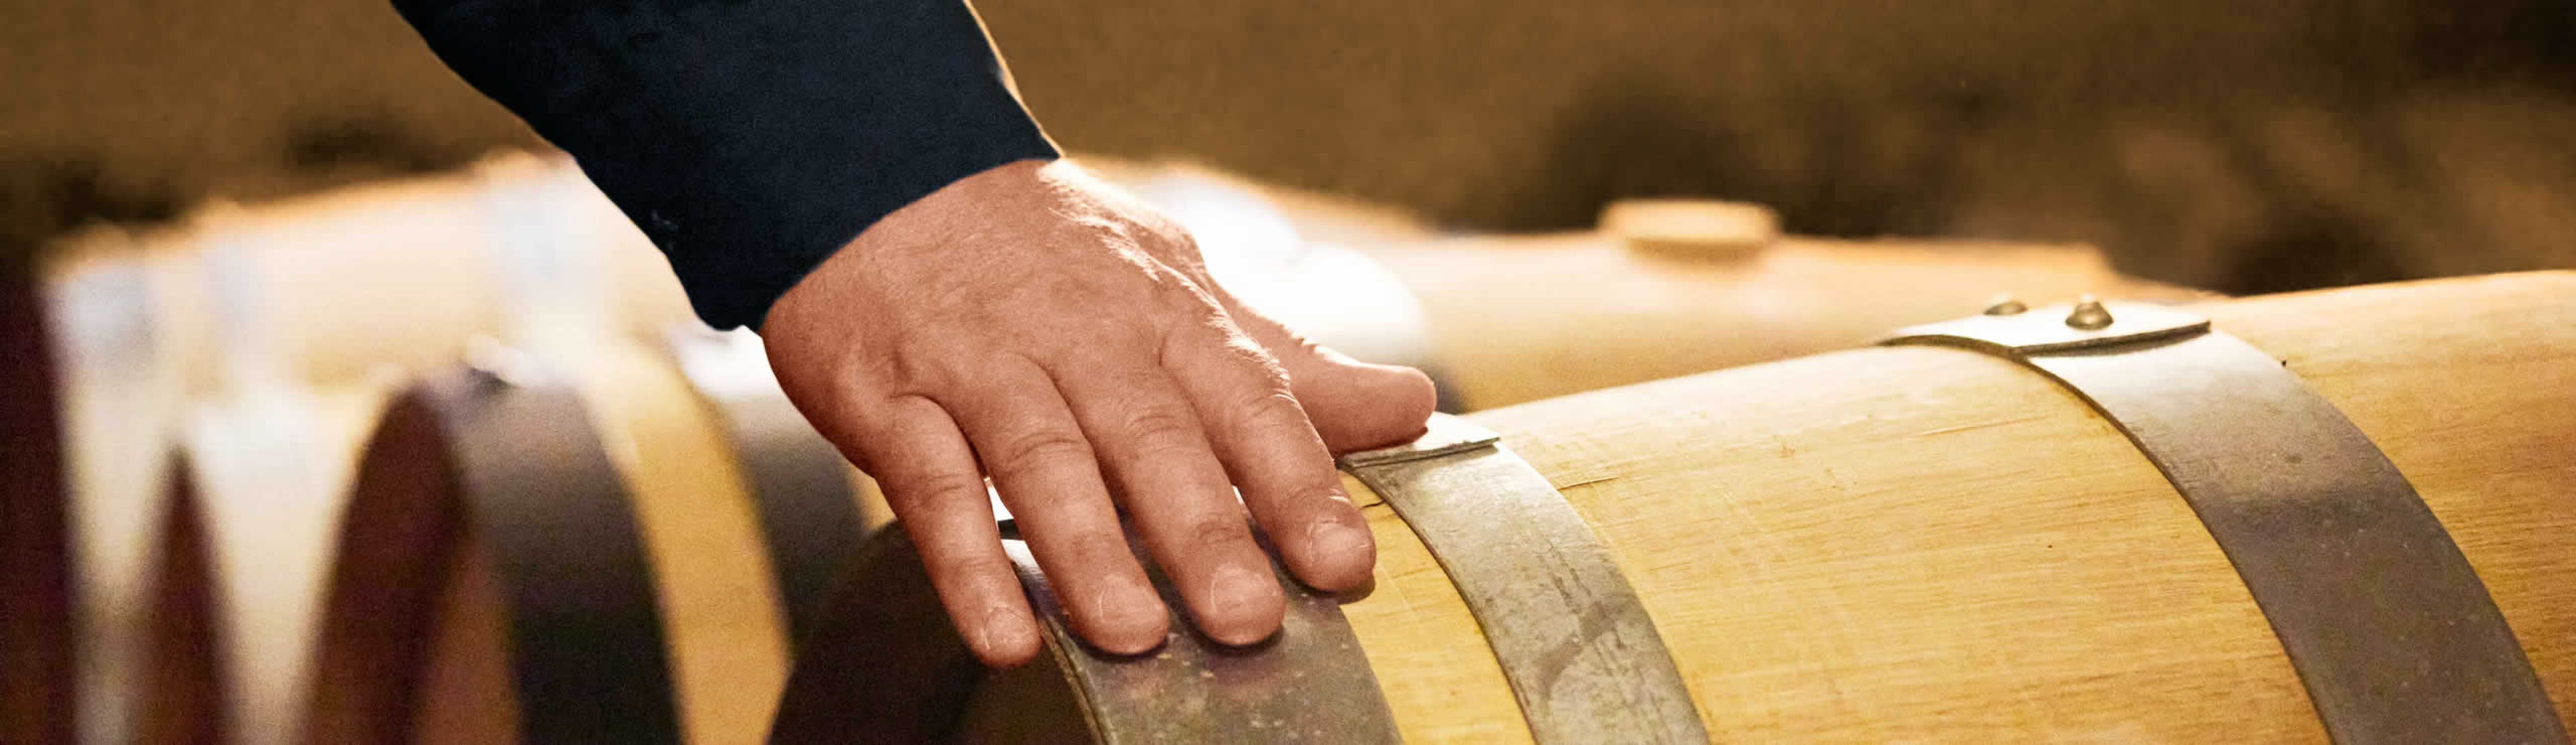 Mann streicht mit seiner Hand über ein Weinfass